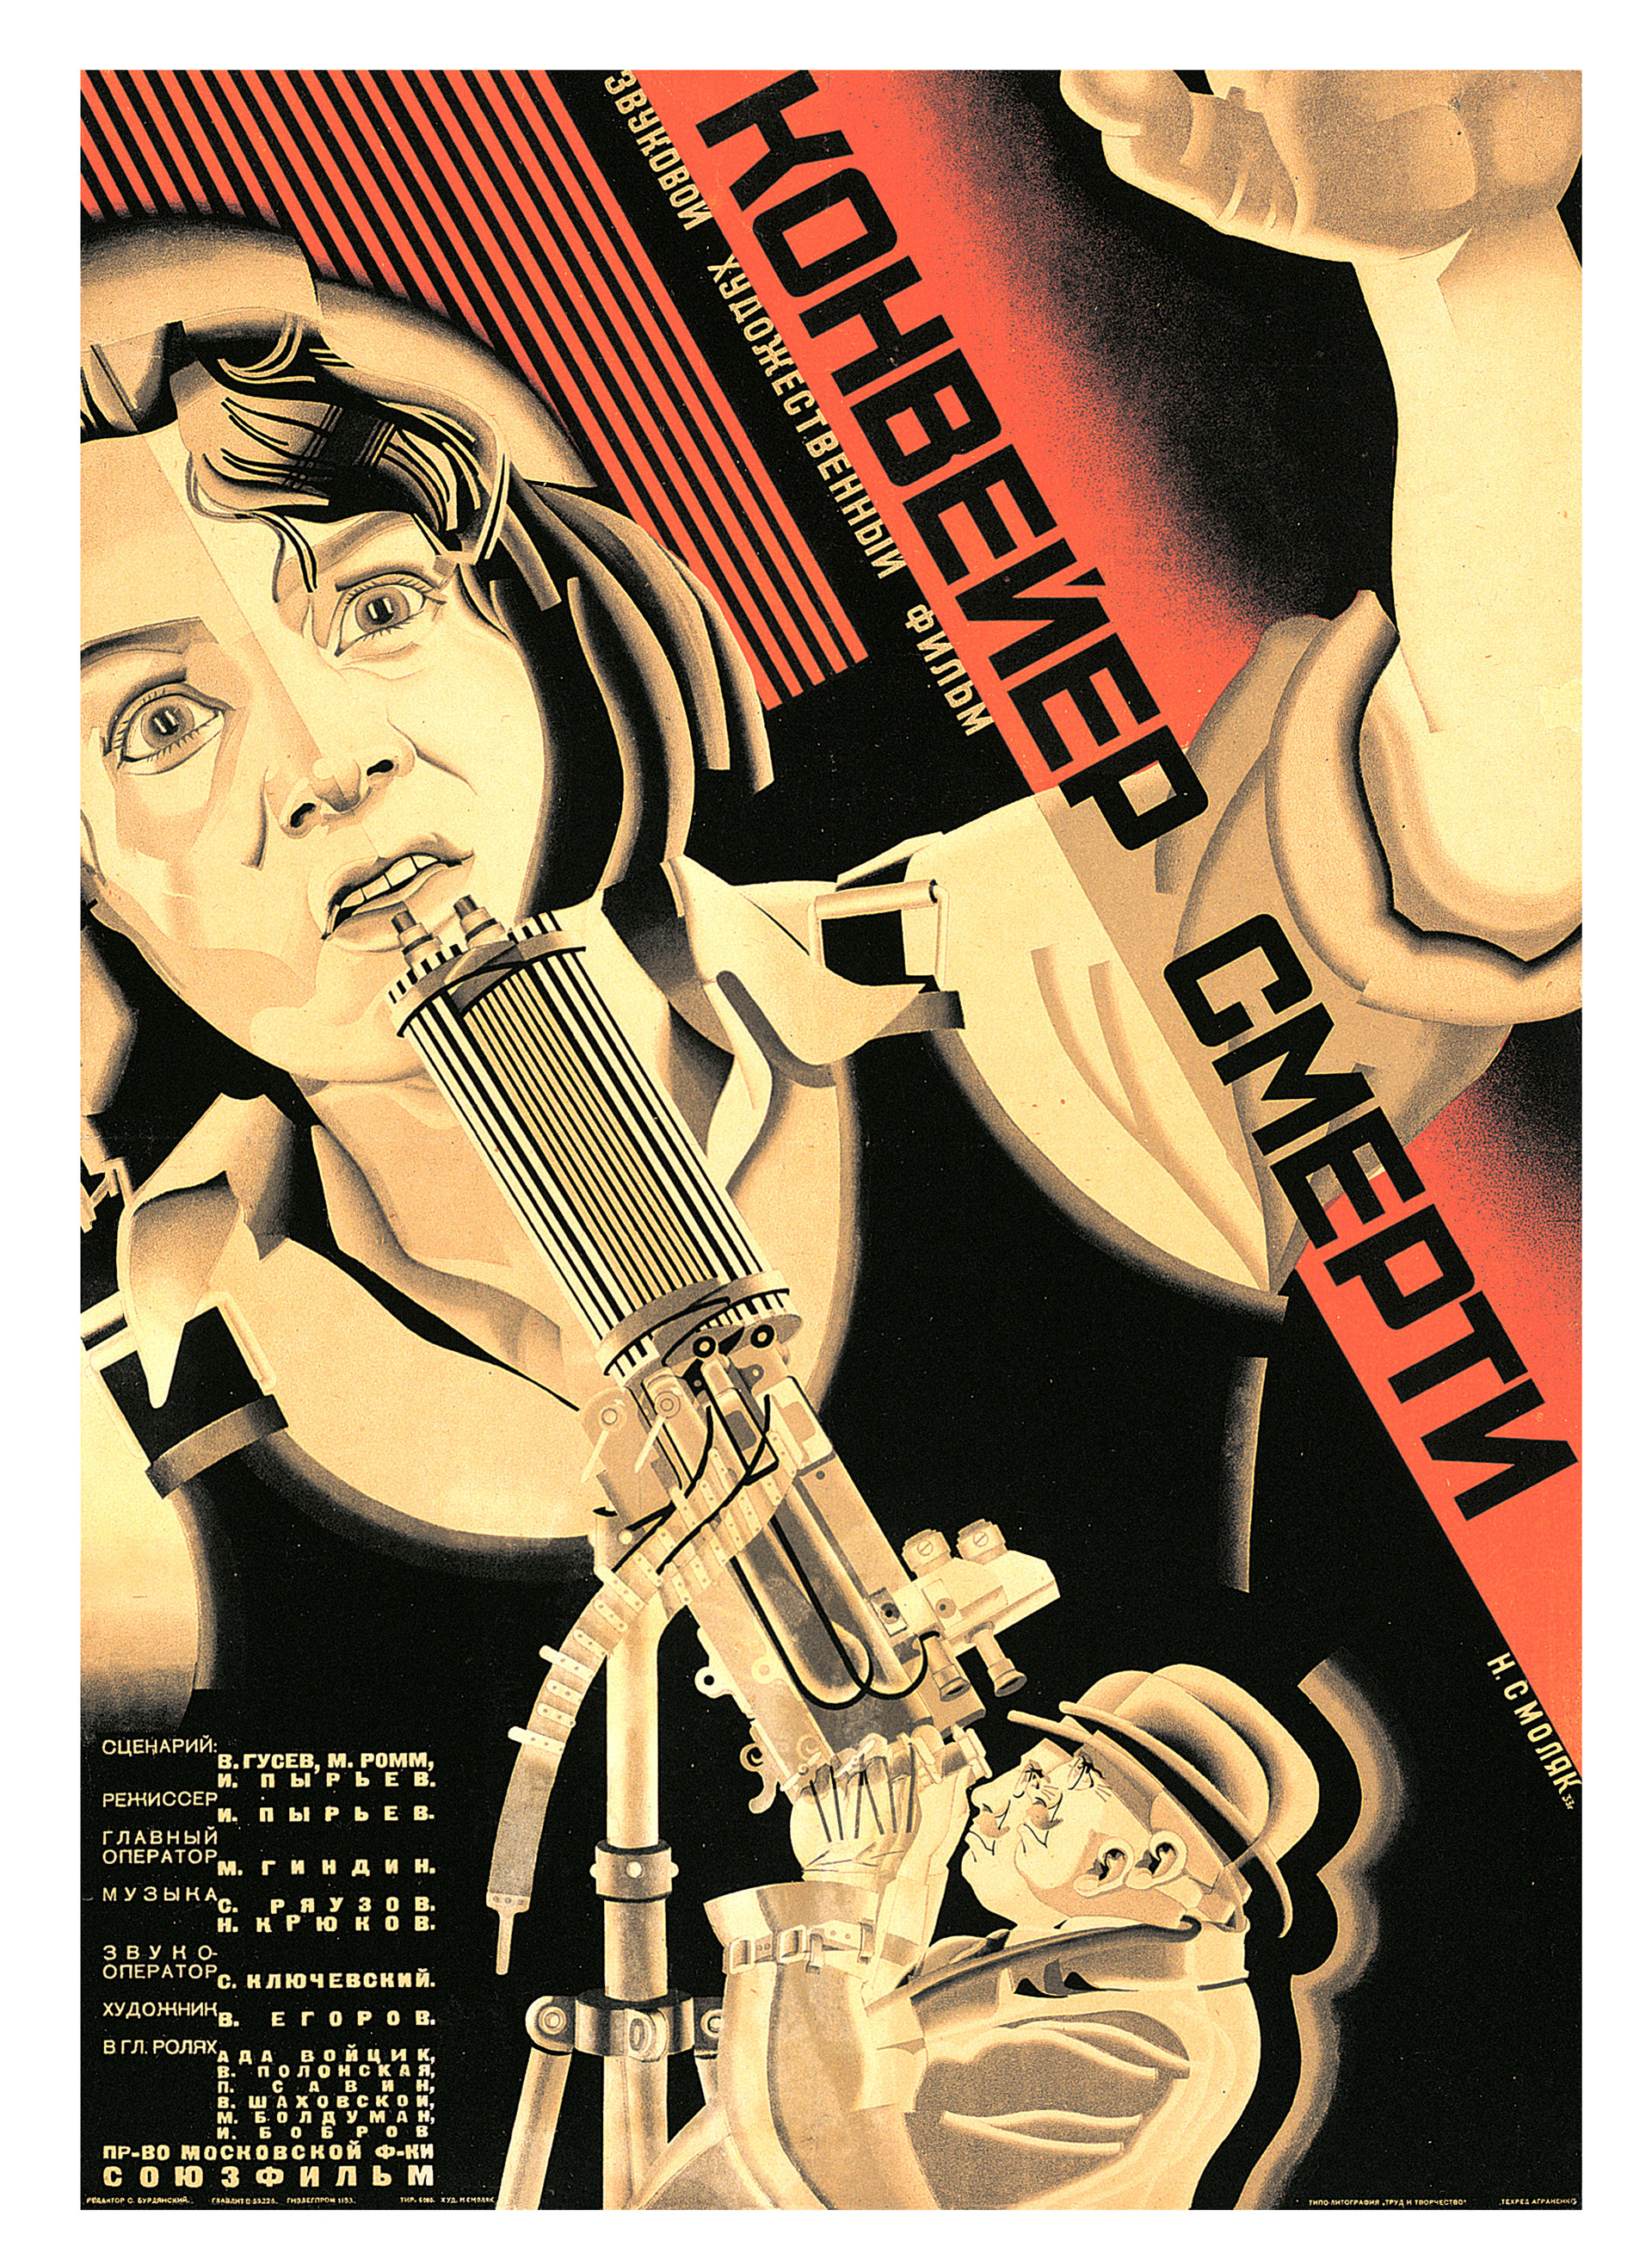 Smoliakovski, affiche pour Le convoyeur de la mort, 1933